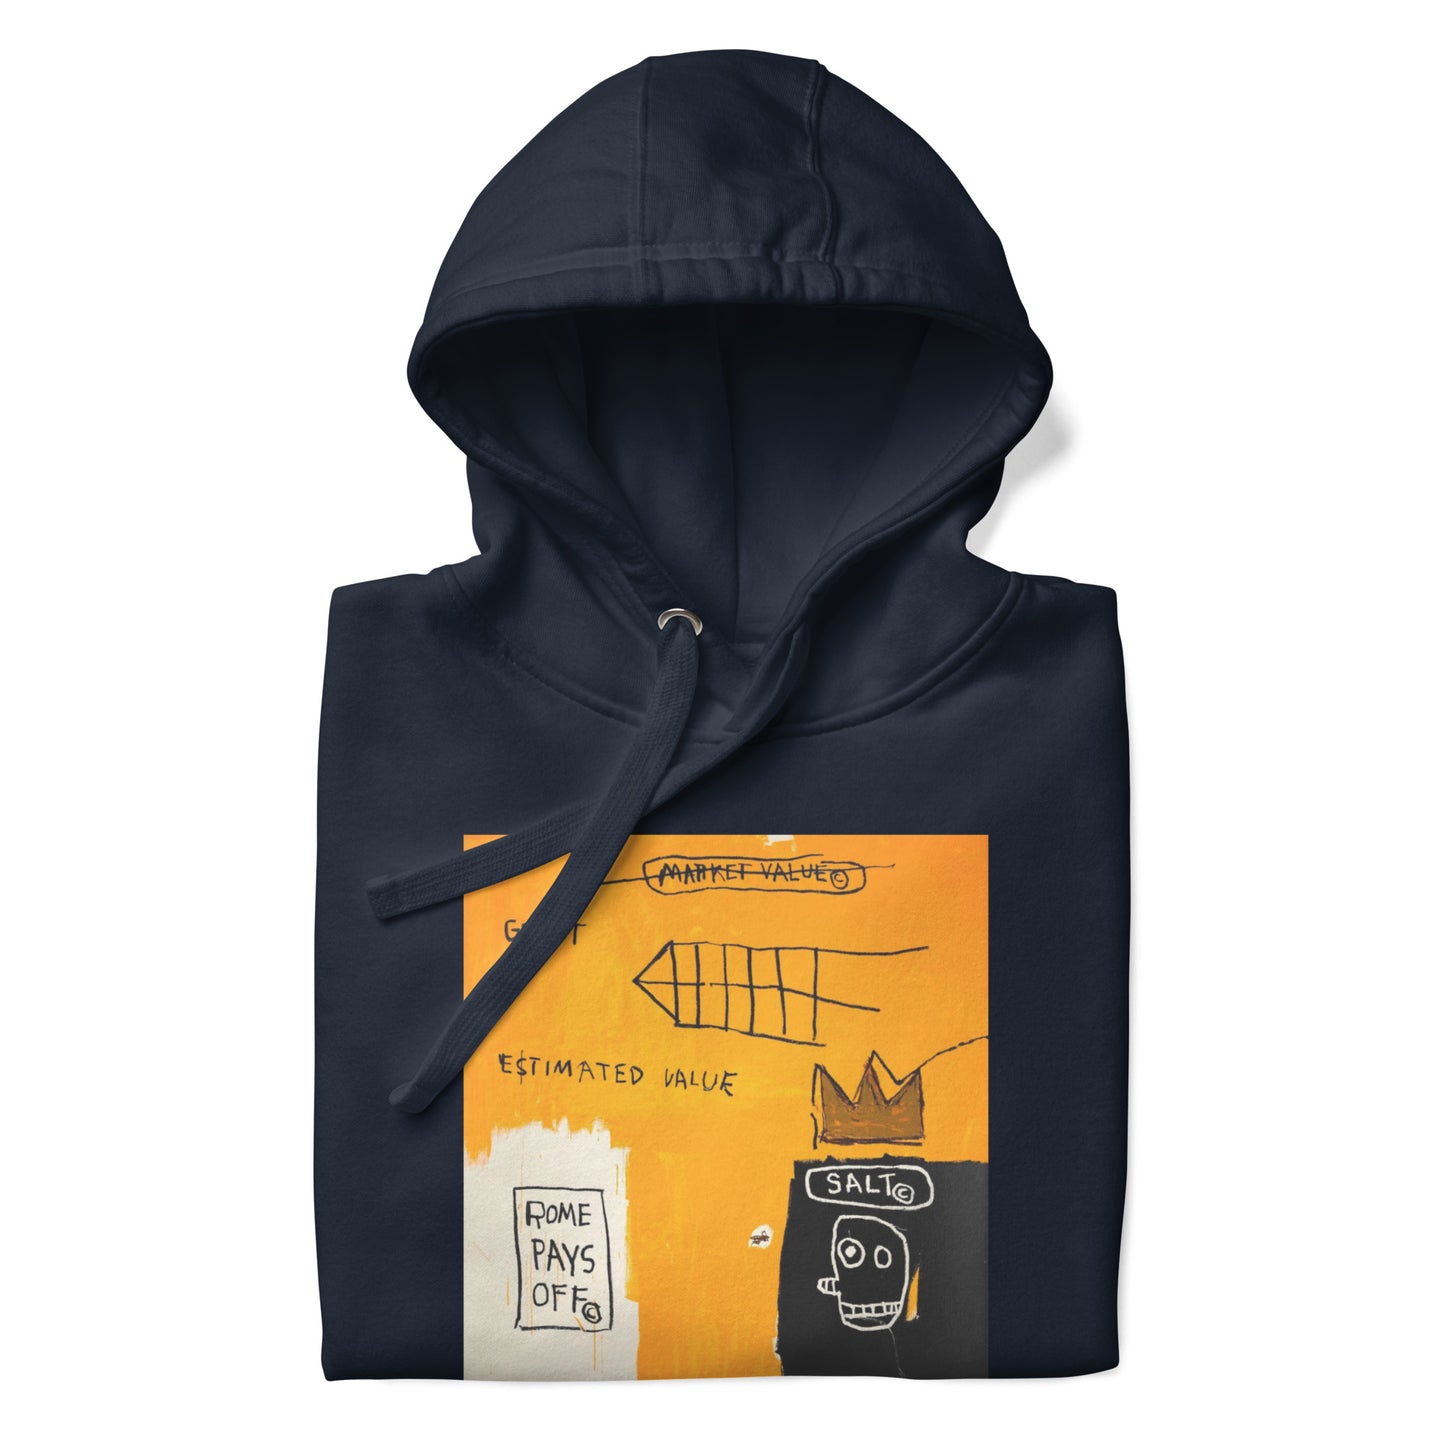 Jean-Michel Basquiat "Rome Pays Off" Artwork Printed Premium Streetwear Sweatshirt Hoodie Navy Blue